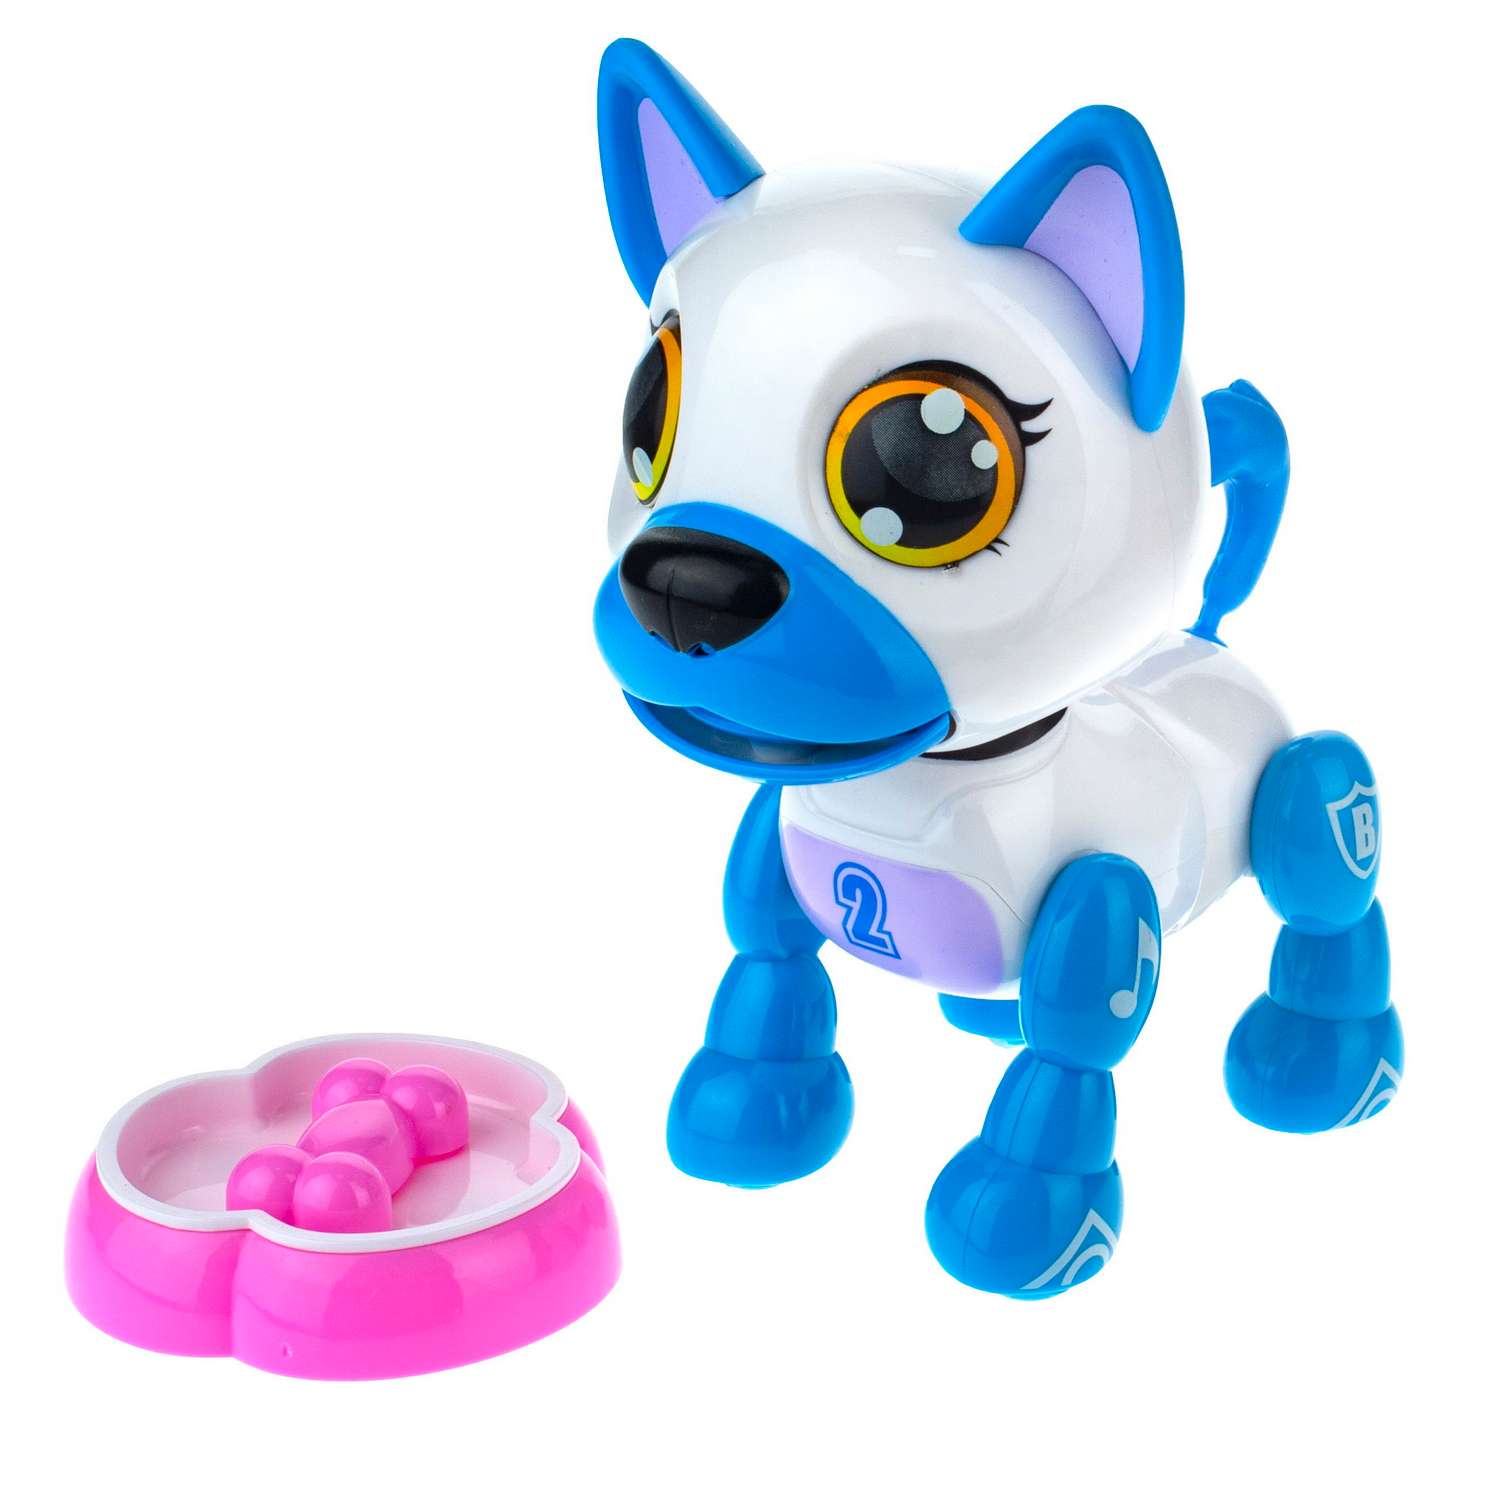 Интерактивная игрушка Robo Pets робо-щенок белый - фото 2